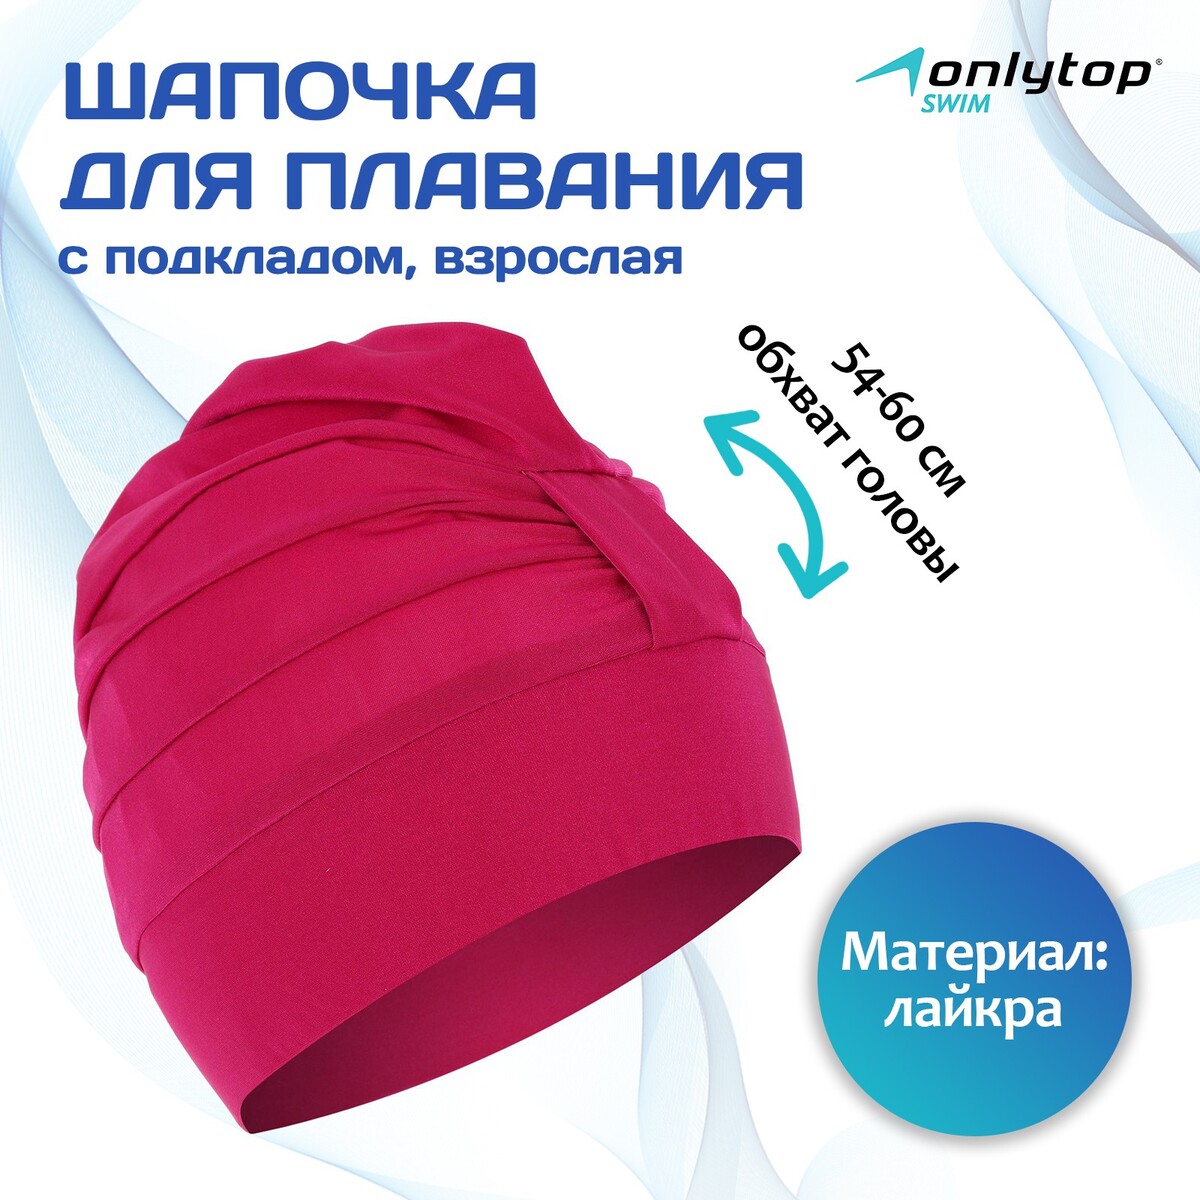 Шапочка для плавания взрослая onlytop, тканевая, обхват 54-60 см, цвет фуксия шапочка для плавания взрослая onlytop тканевая обхват 54 60 см розовый